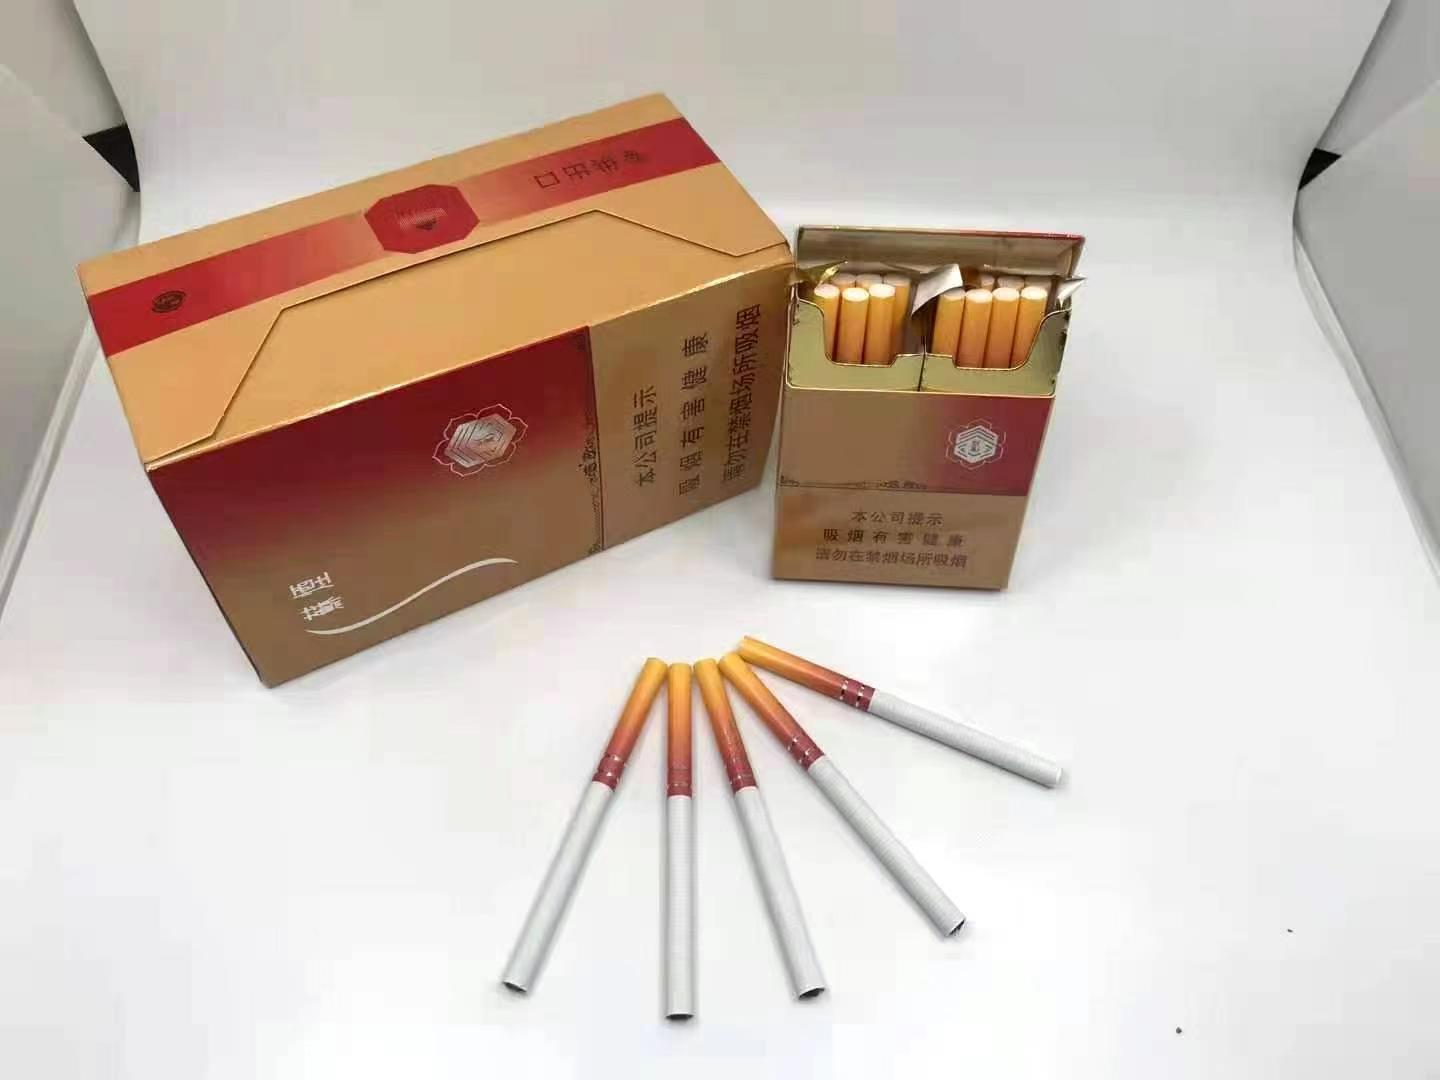 越南代工烟_越南代工香烟质量到底如何_越南代工的烟